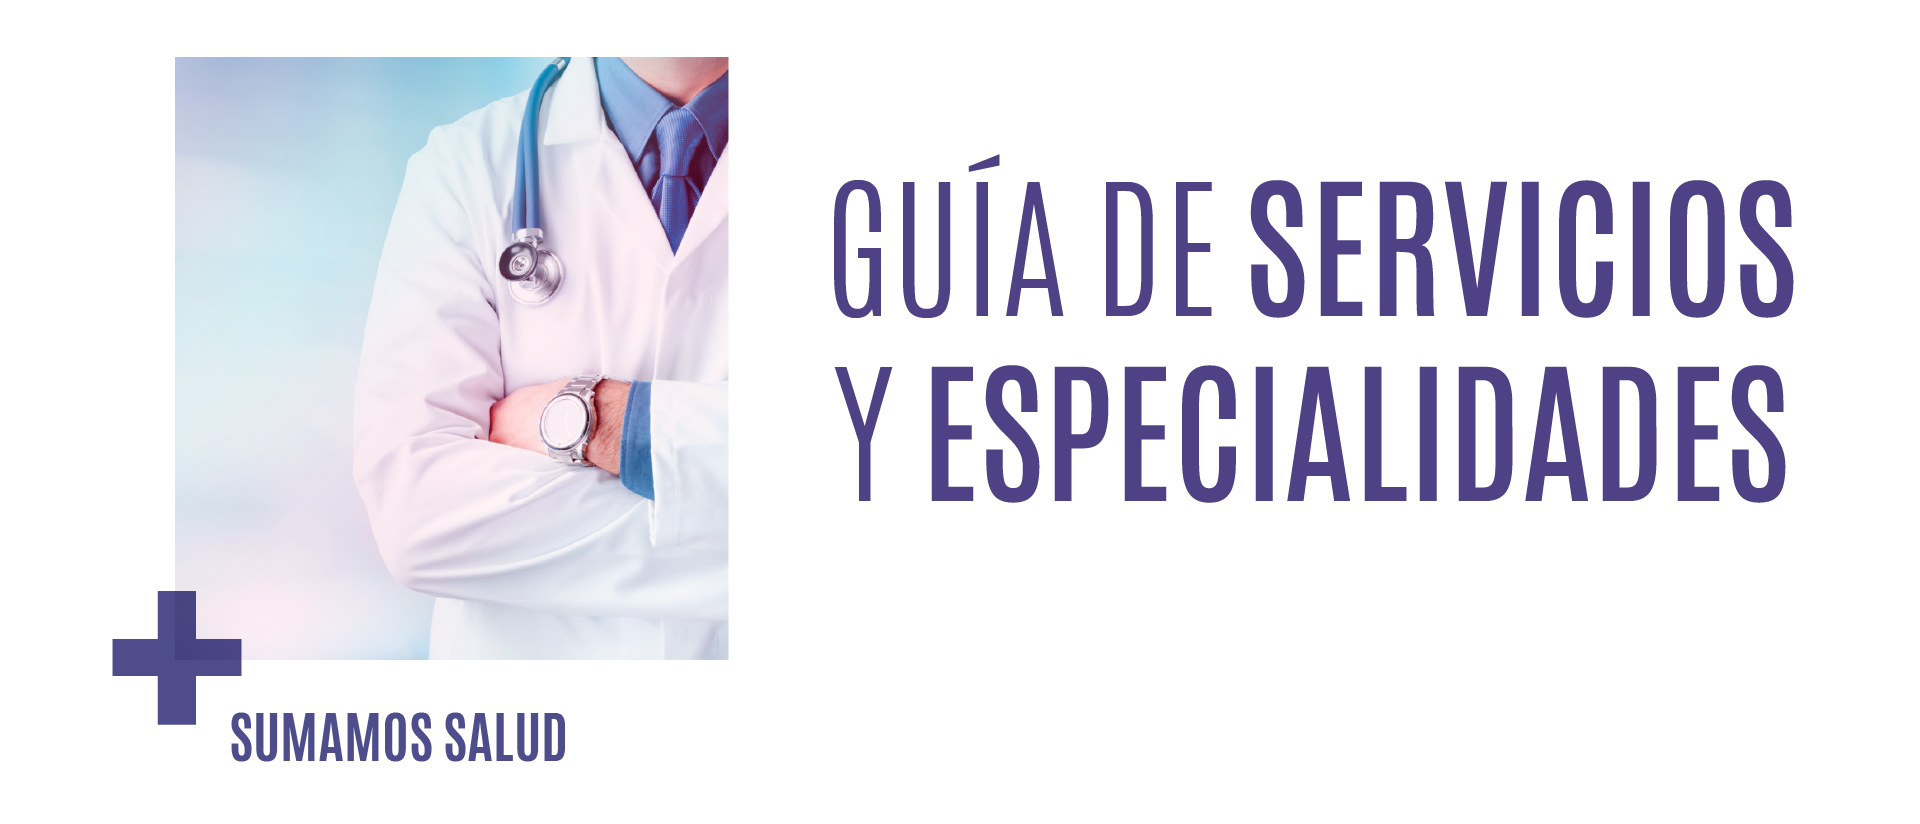 Servicios y especialidades HLA Centro Médico Toledo